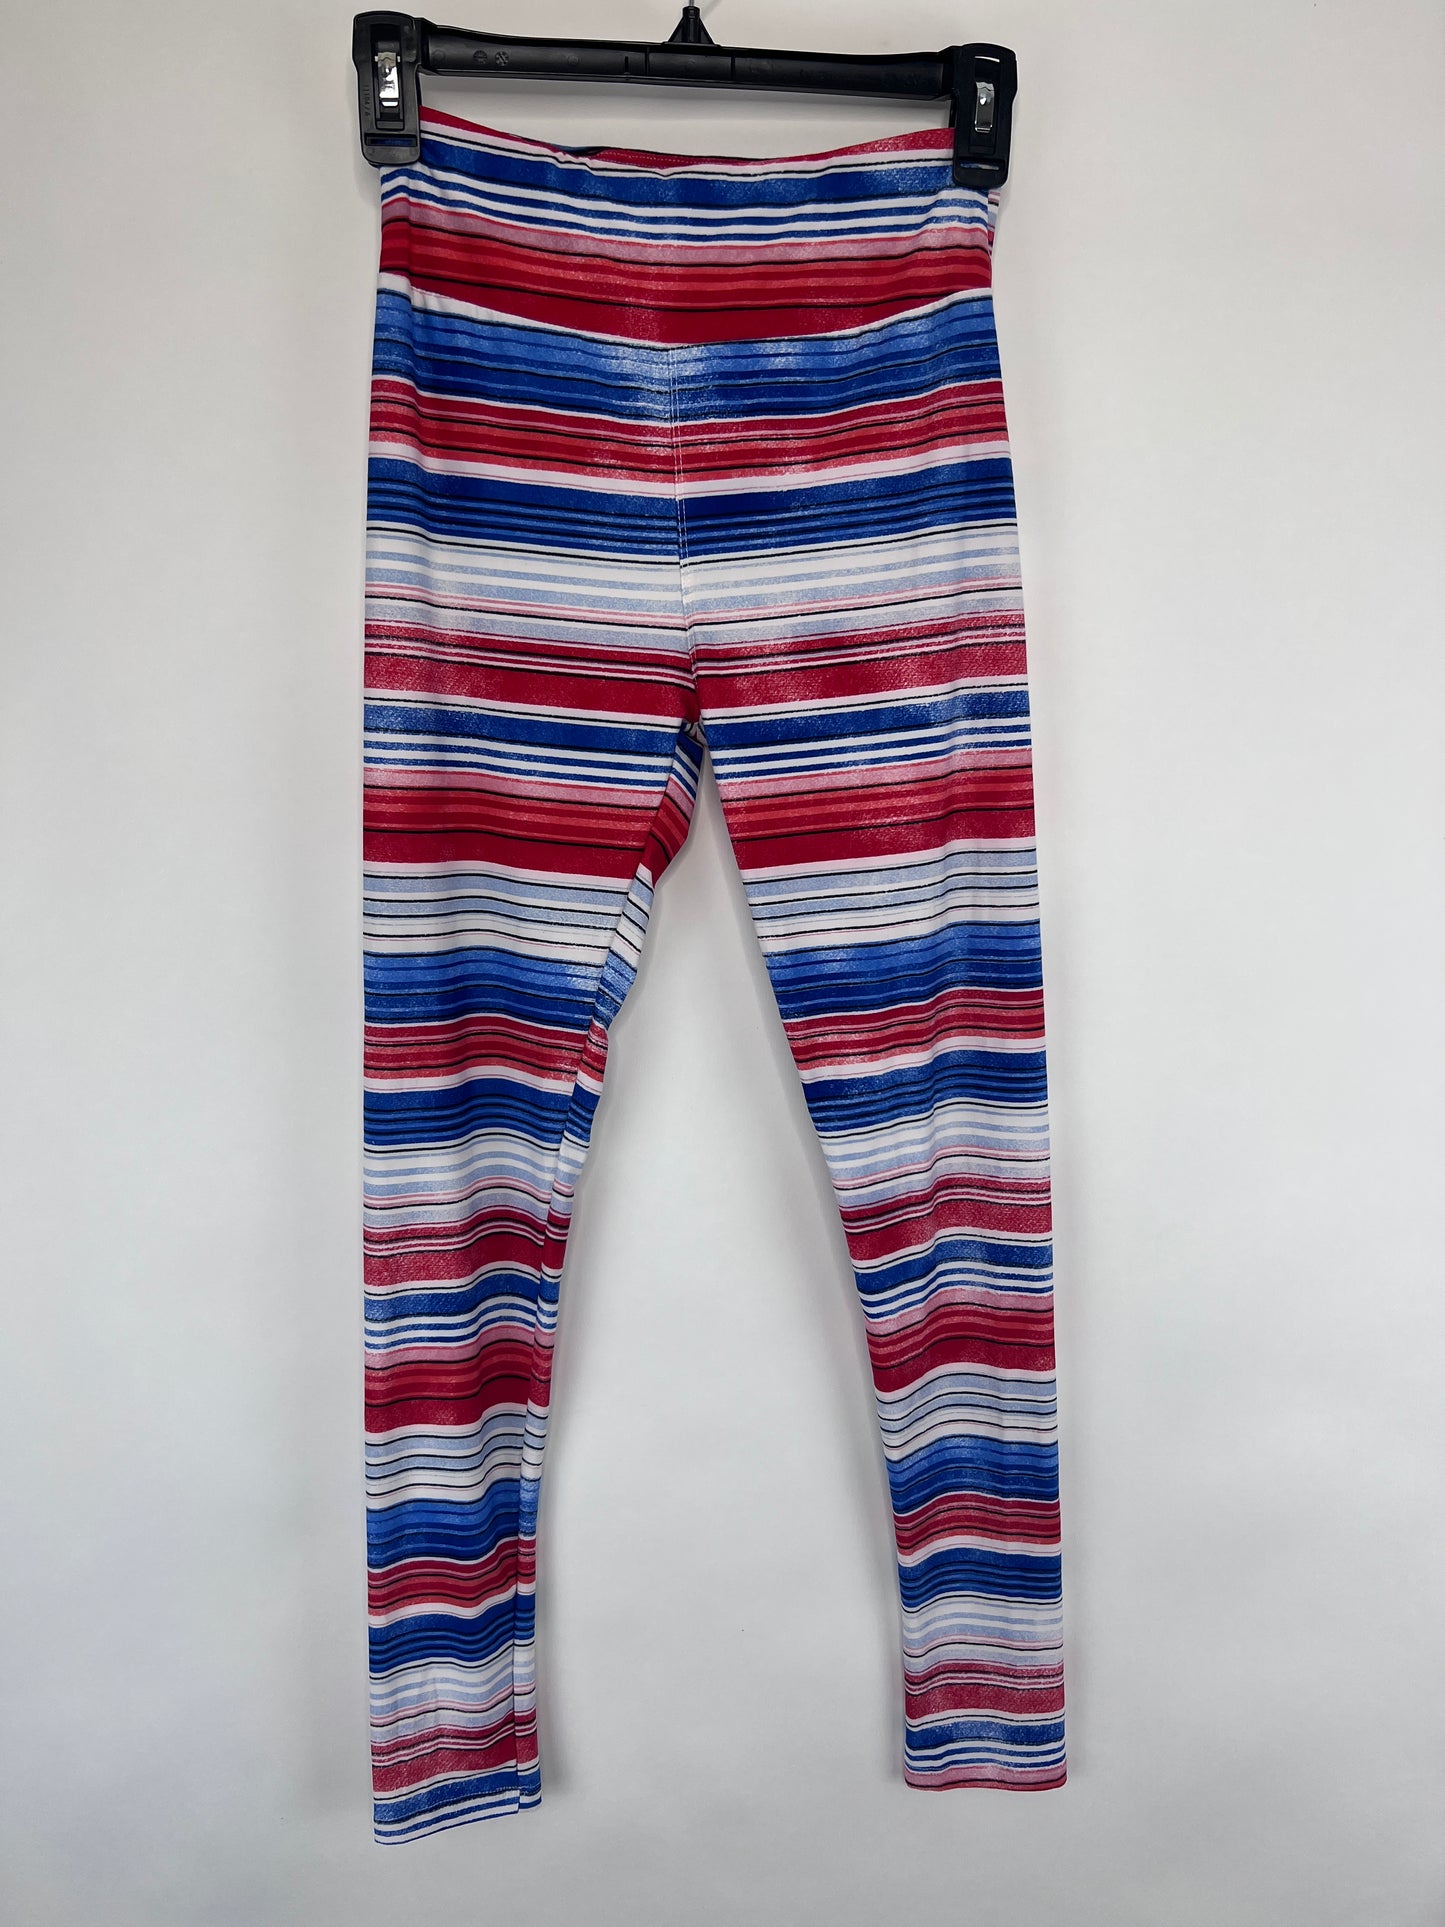 Lularoe Patriotic Pants - Youth One Size